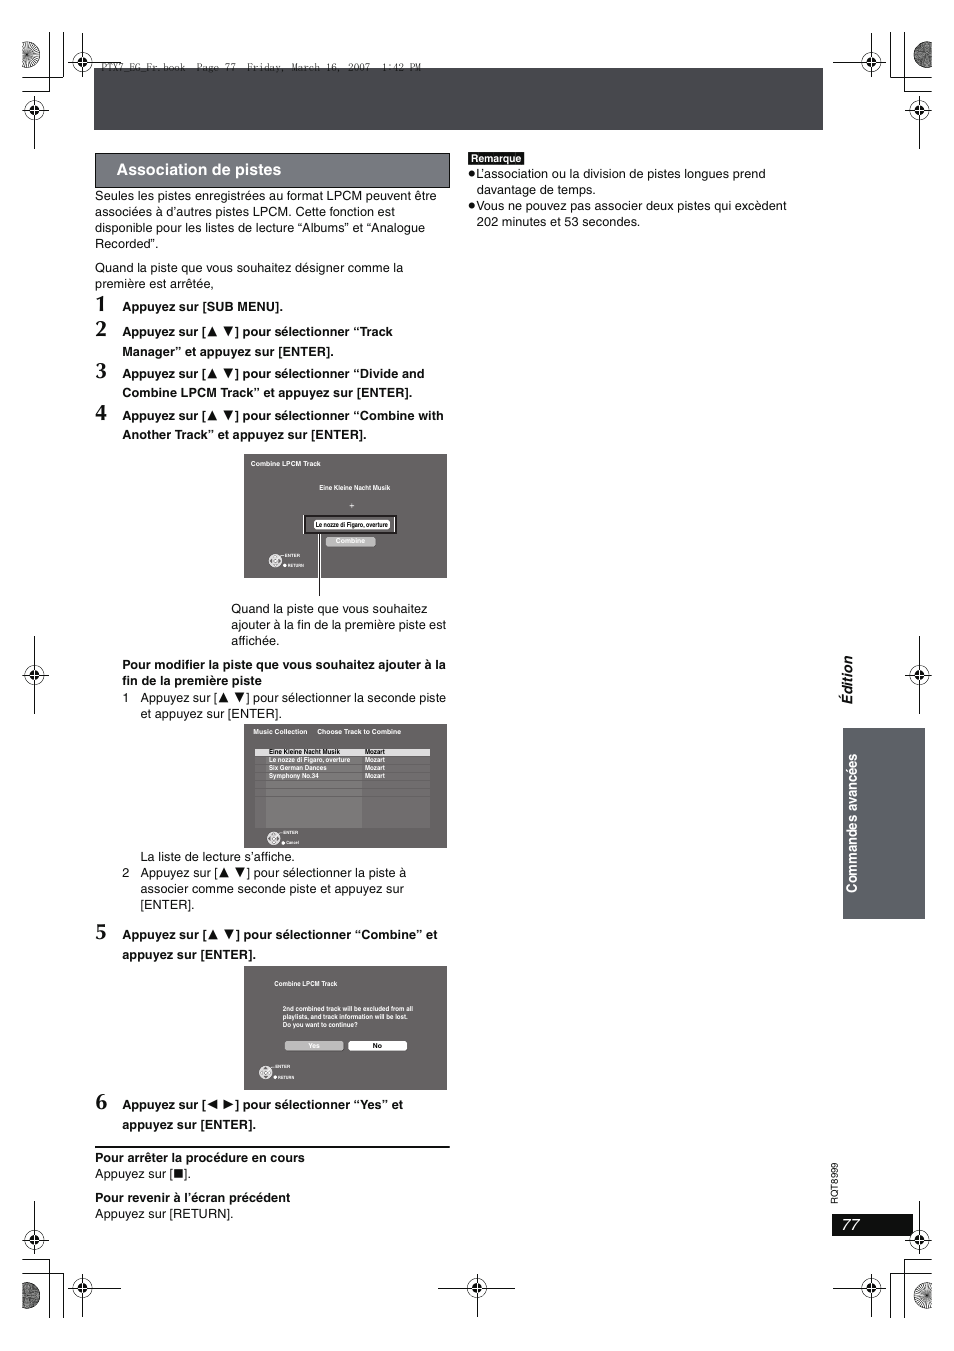 Association de pistes | Panasonic SCPTX7 Manuel d'utilisation | Page 77 / 112